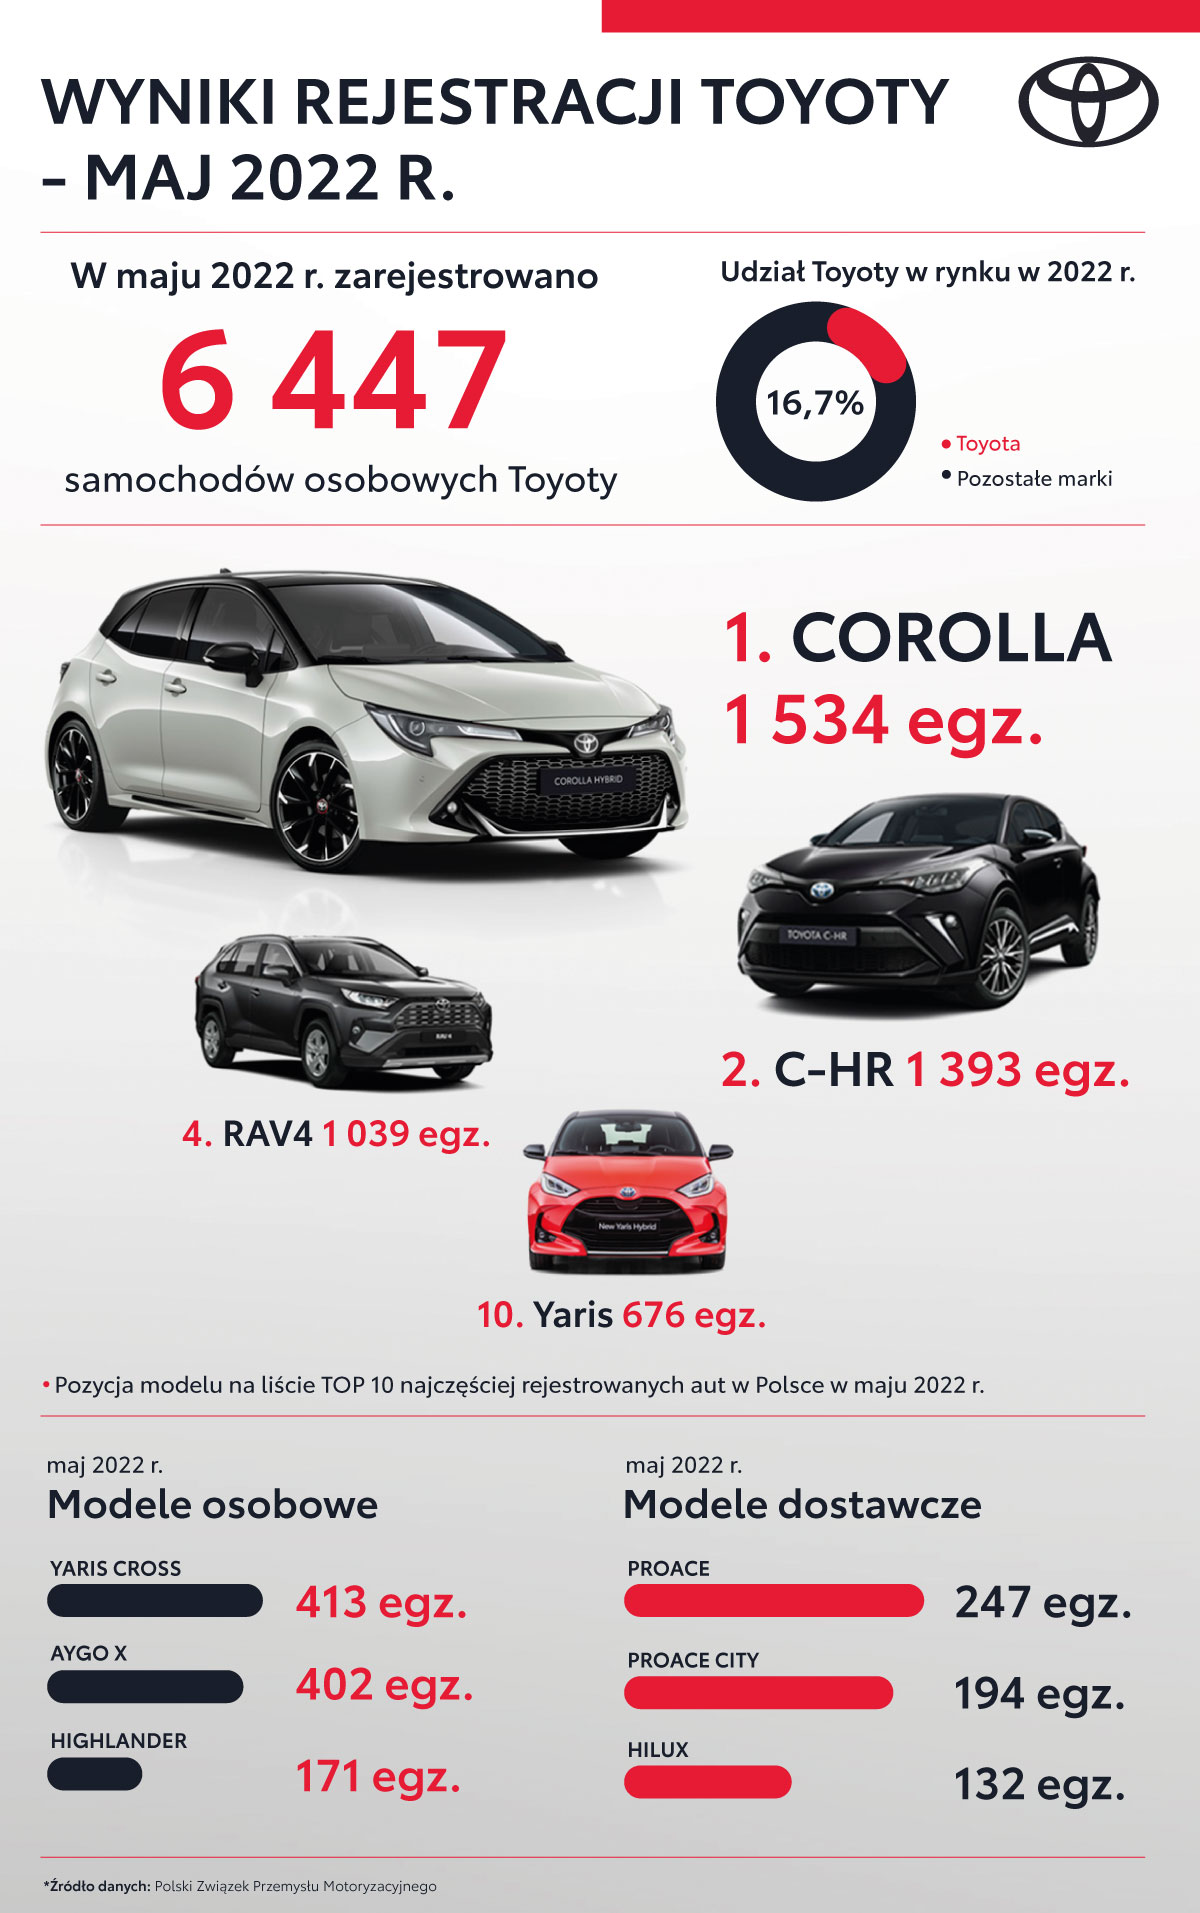 Aygo X najpopularniejszym małym autem wśród osób prywatnych. Wyraźna zmiana preferencji klientów indywidualnych w kierunku SUV-ów. Wyniki z maja 2022